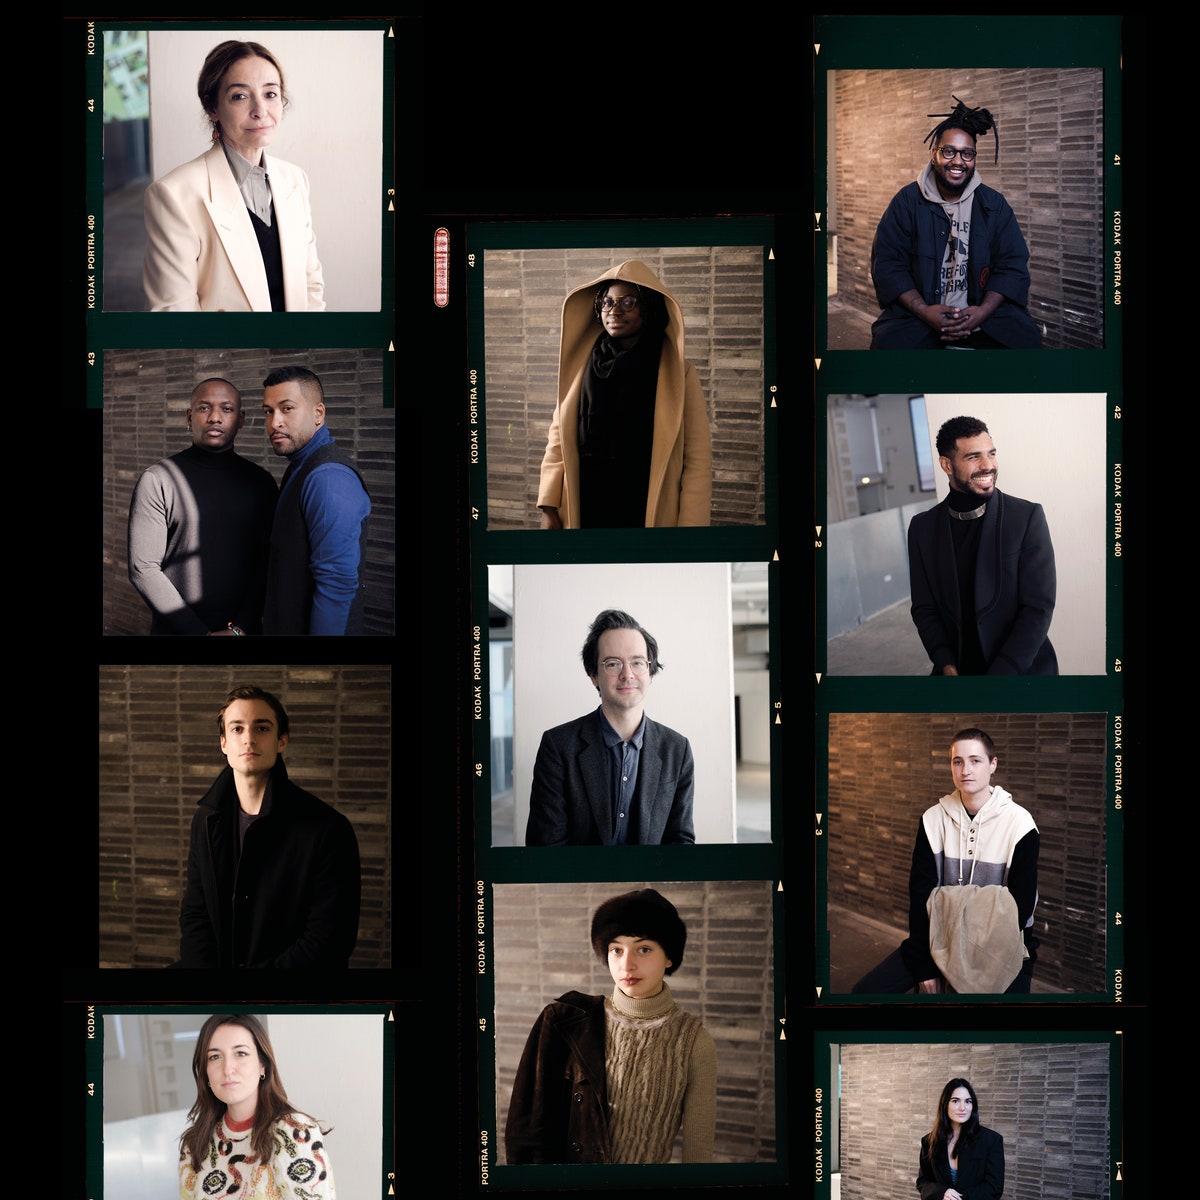 Photo Vogue People: ecco alcuni volti della sesta edizione del Photo Vogue Festival 2021